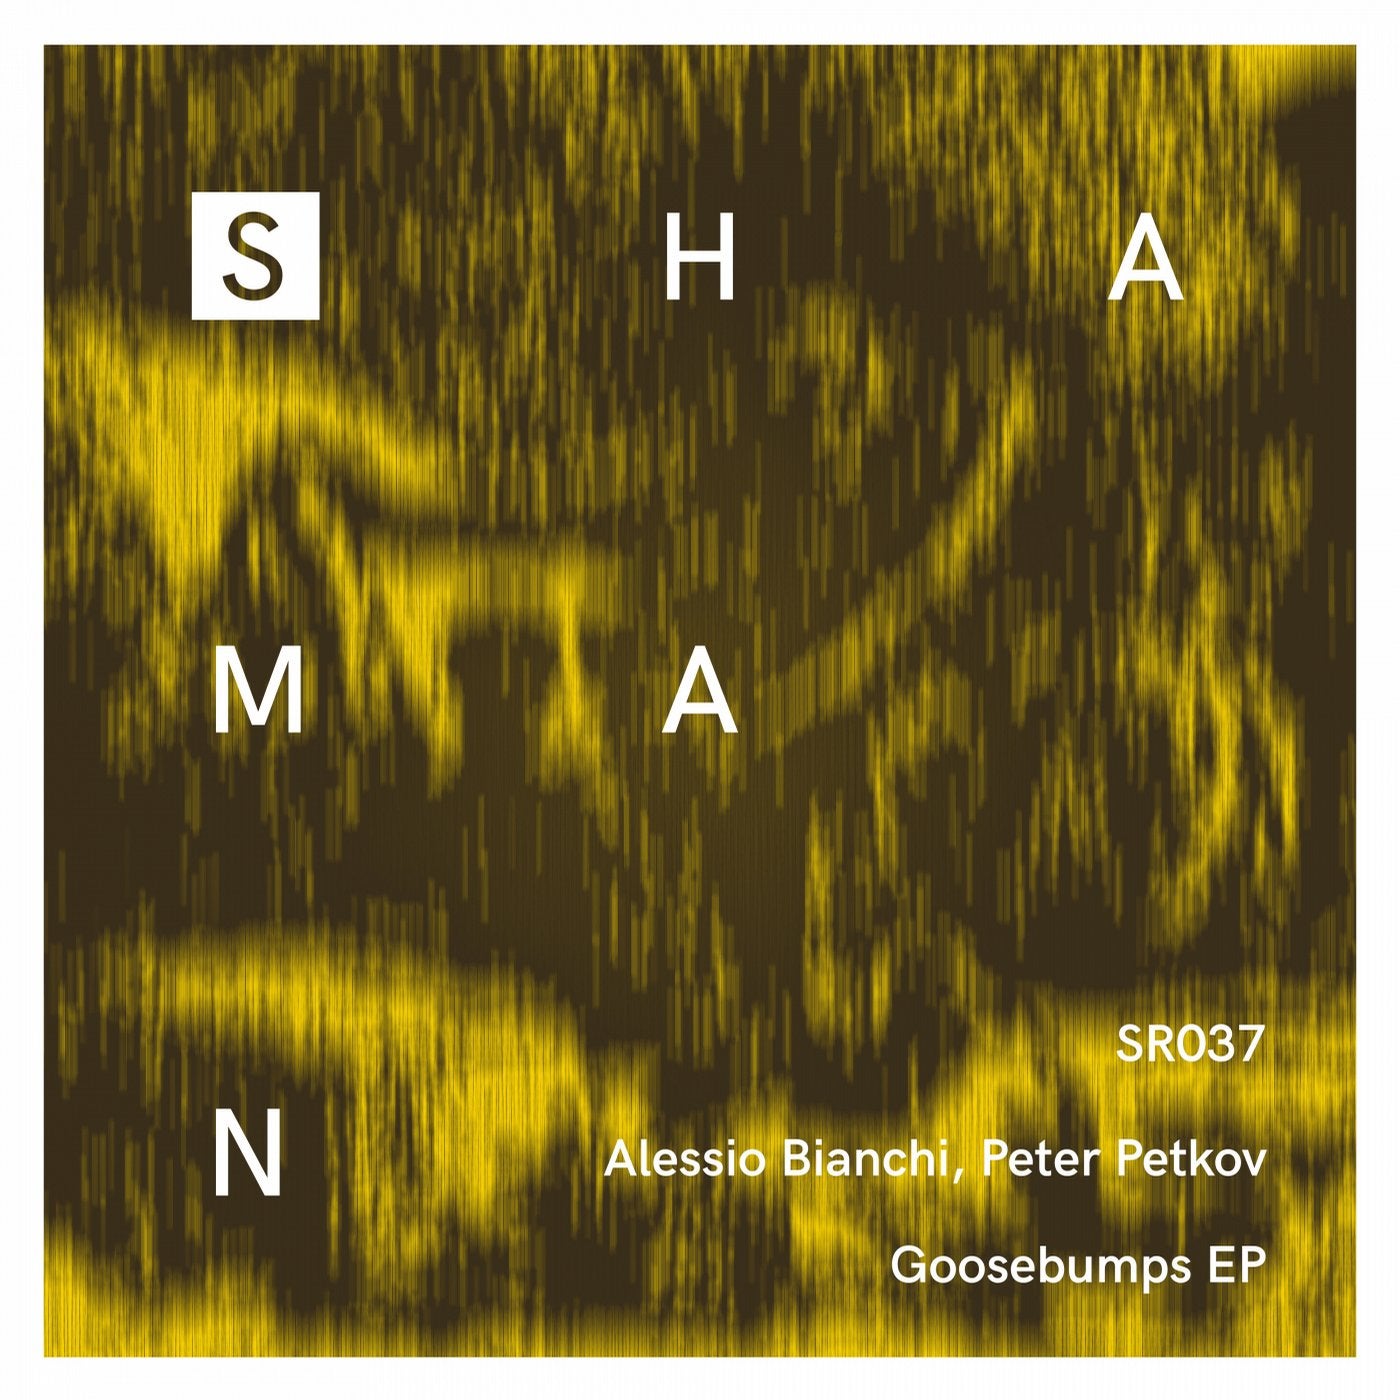 Goosebumps EP